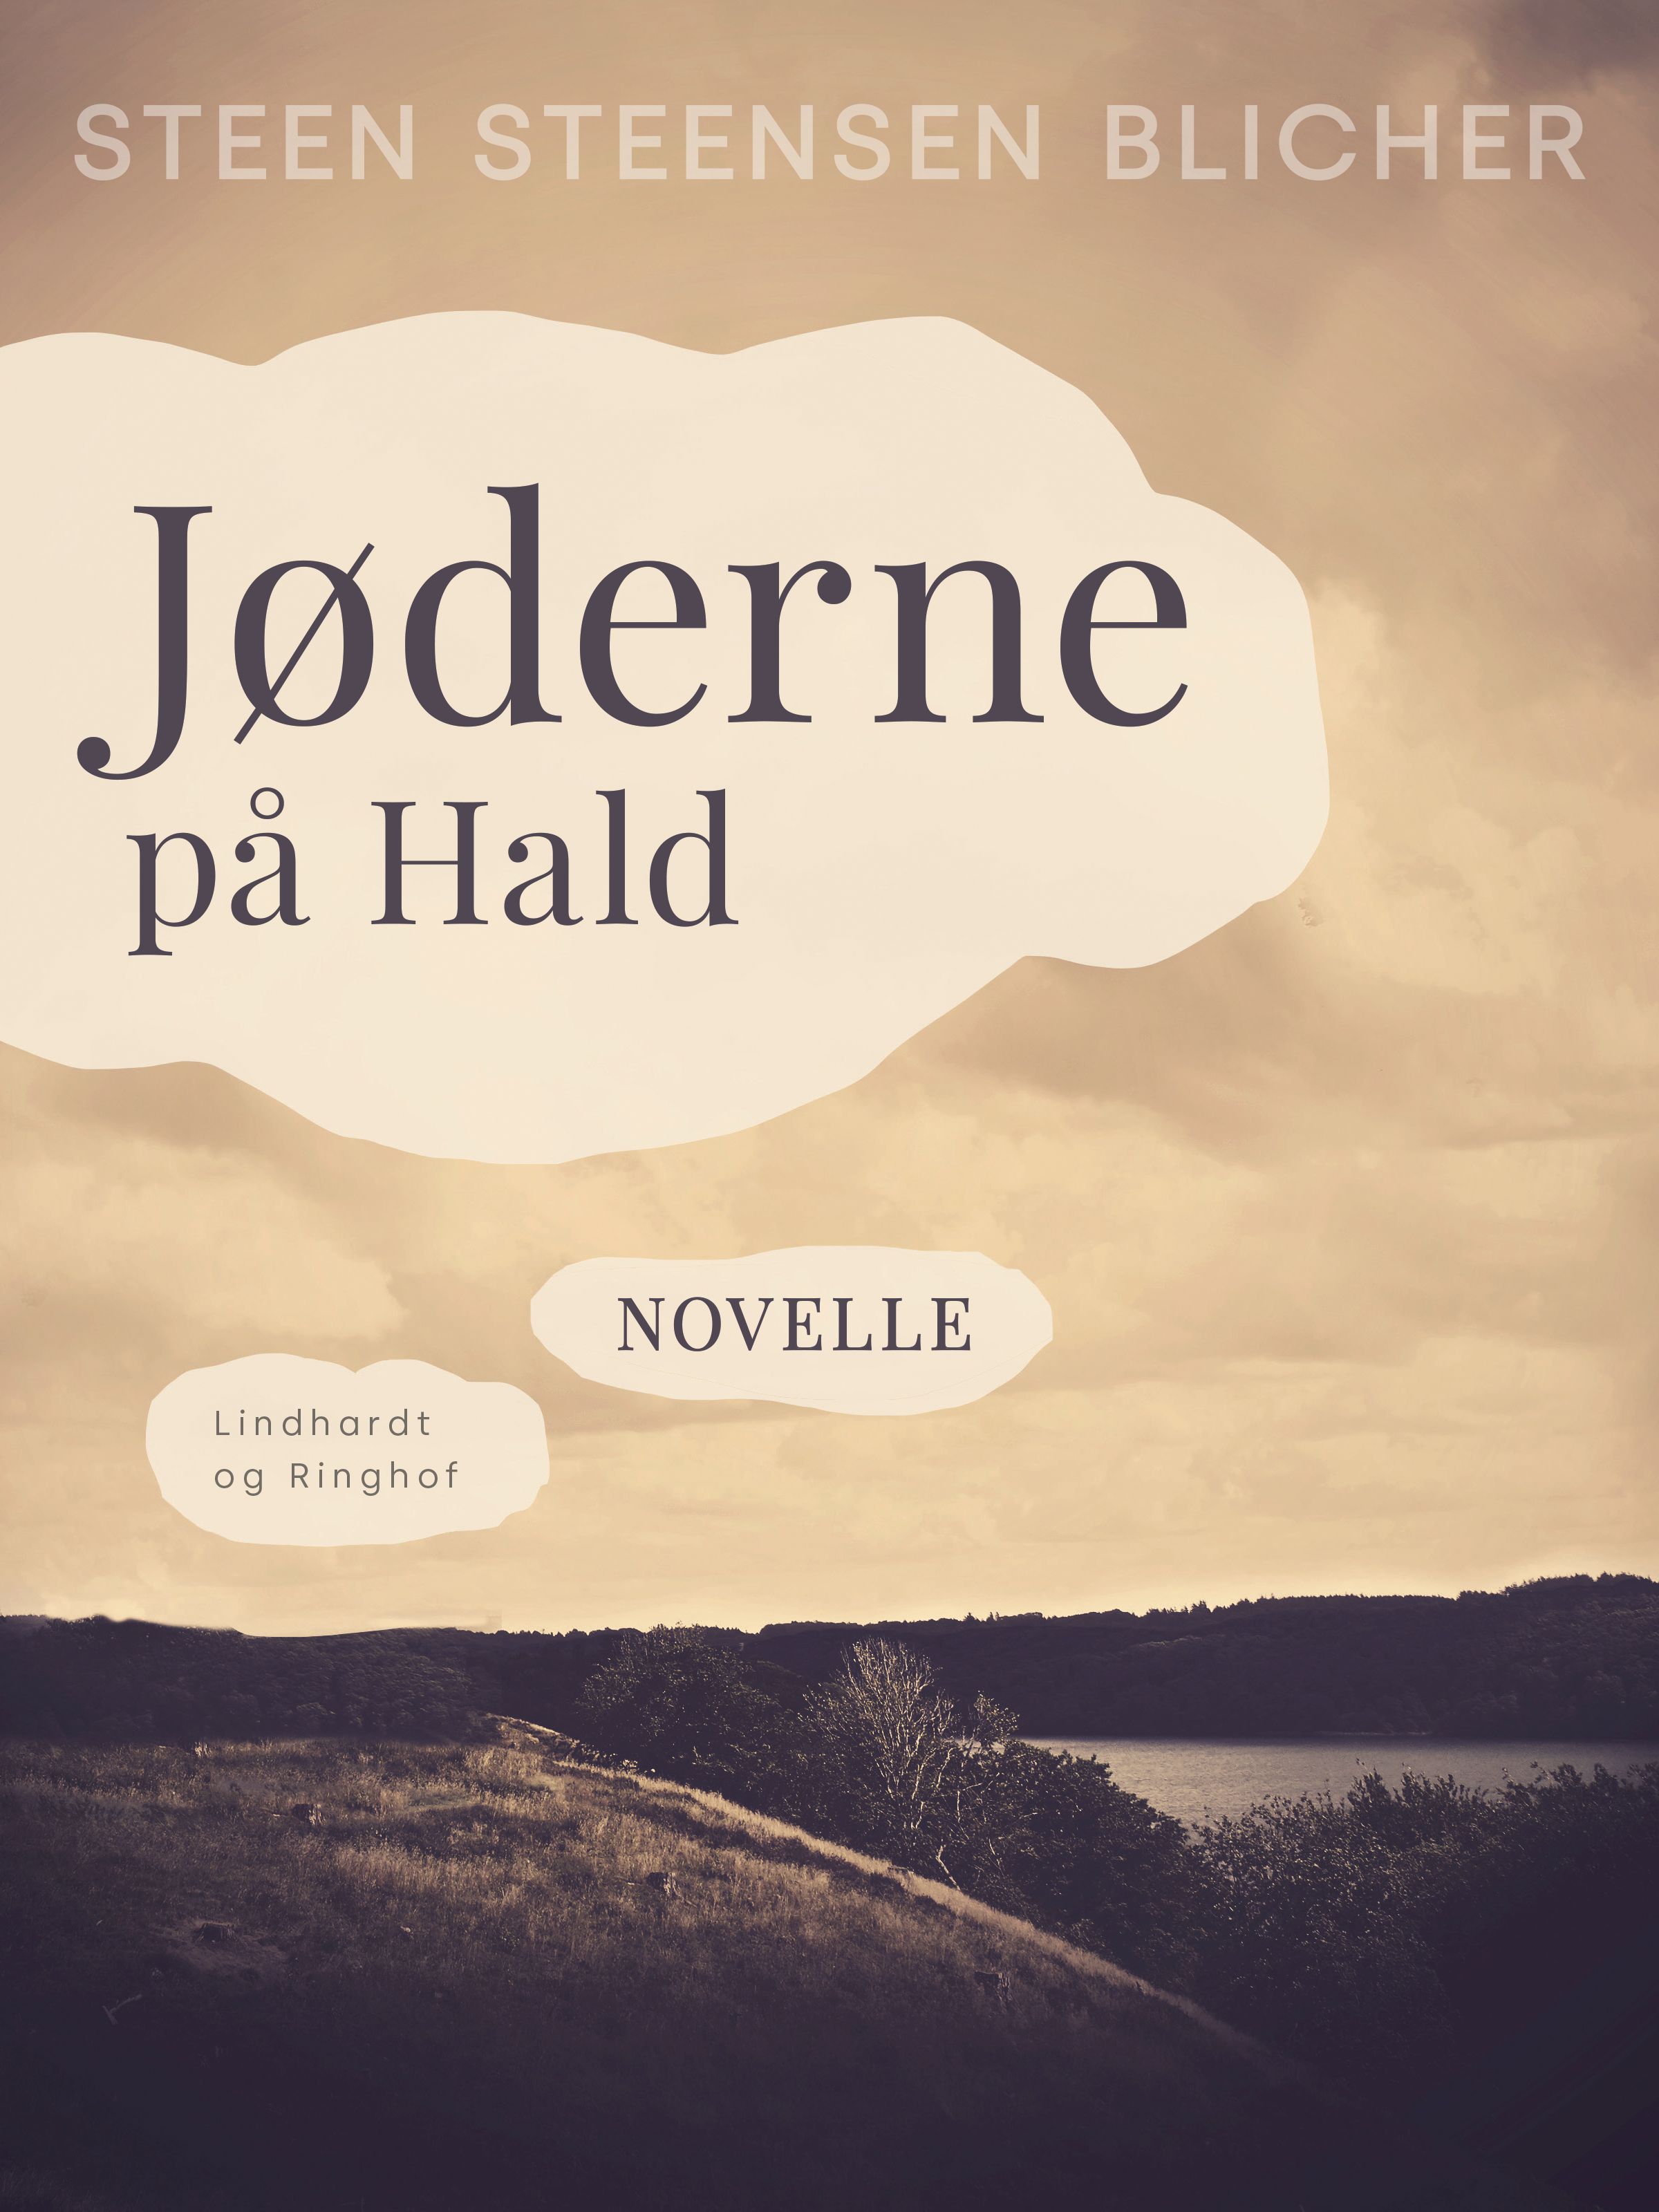 Jøderne på Hald, e-bog af Steen Steensen Blicher